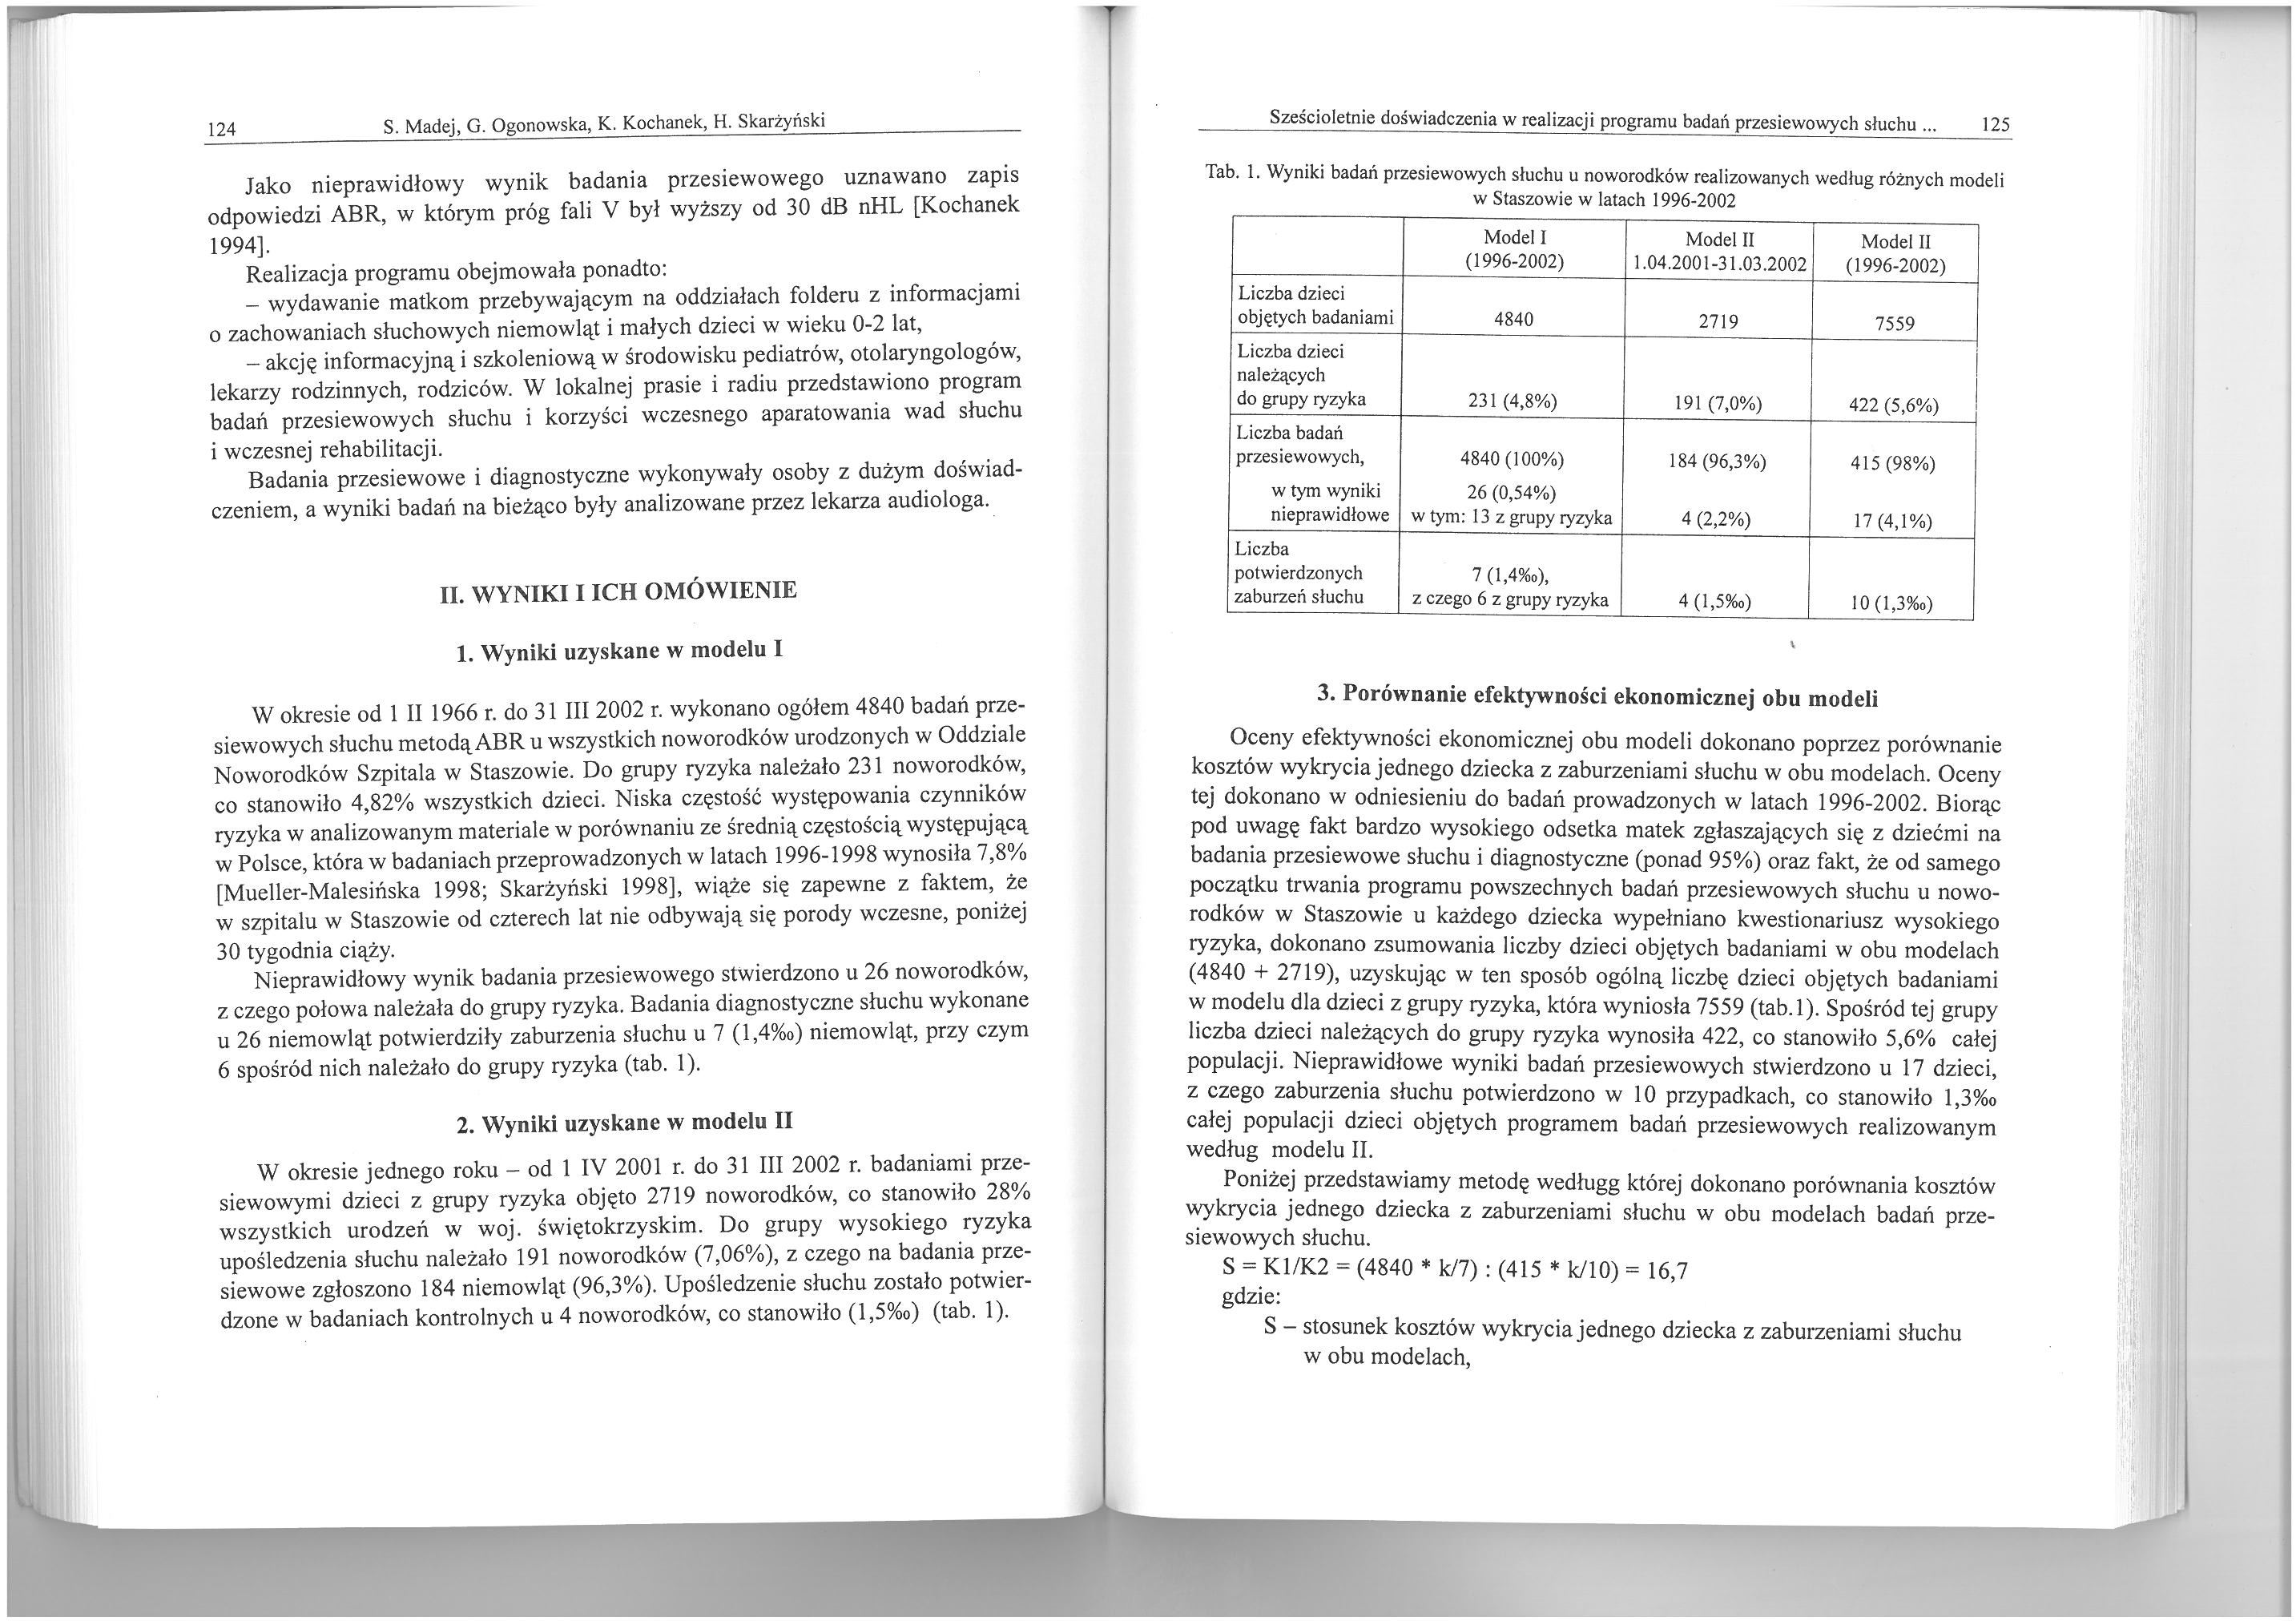 124 S. Madej, G. Ogonowska, K. Kochanek, H. Jako nieprawidłowy wynik badania przesiewowego uznawano zapis odpowiedzi ABR, w którym próg fali V był wyższy od 30 db nhl [Kochanek 1994].